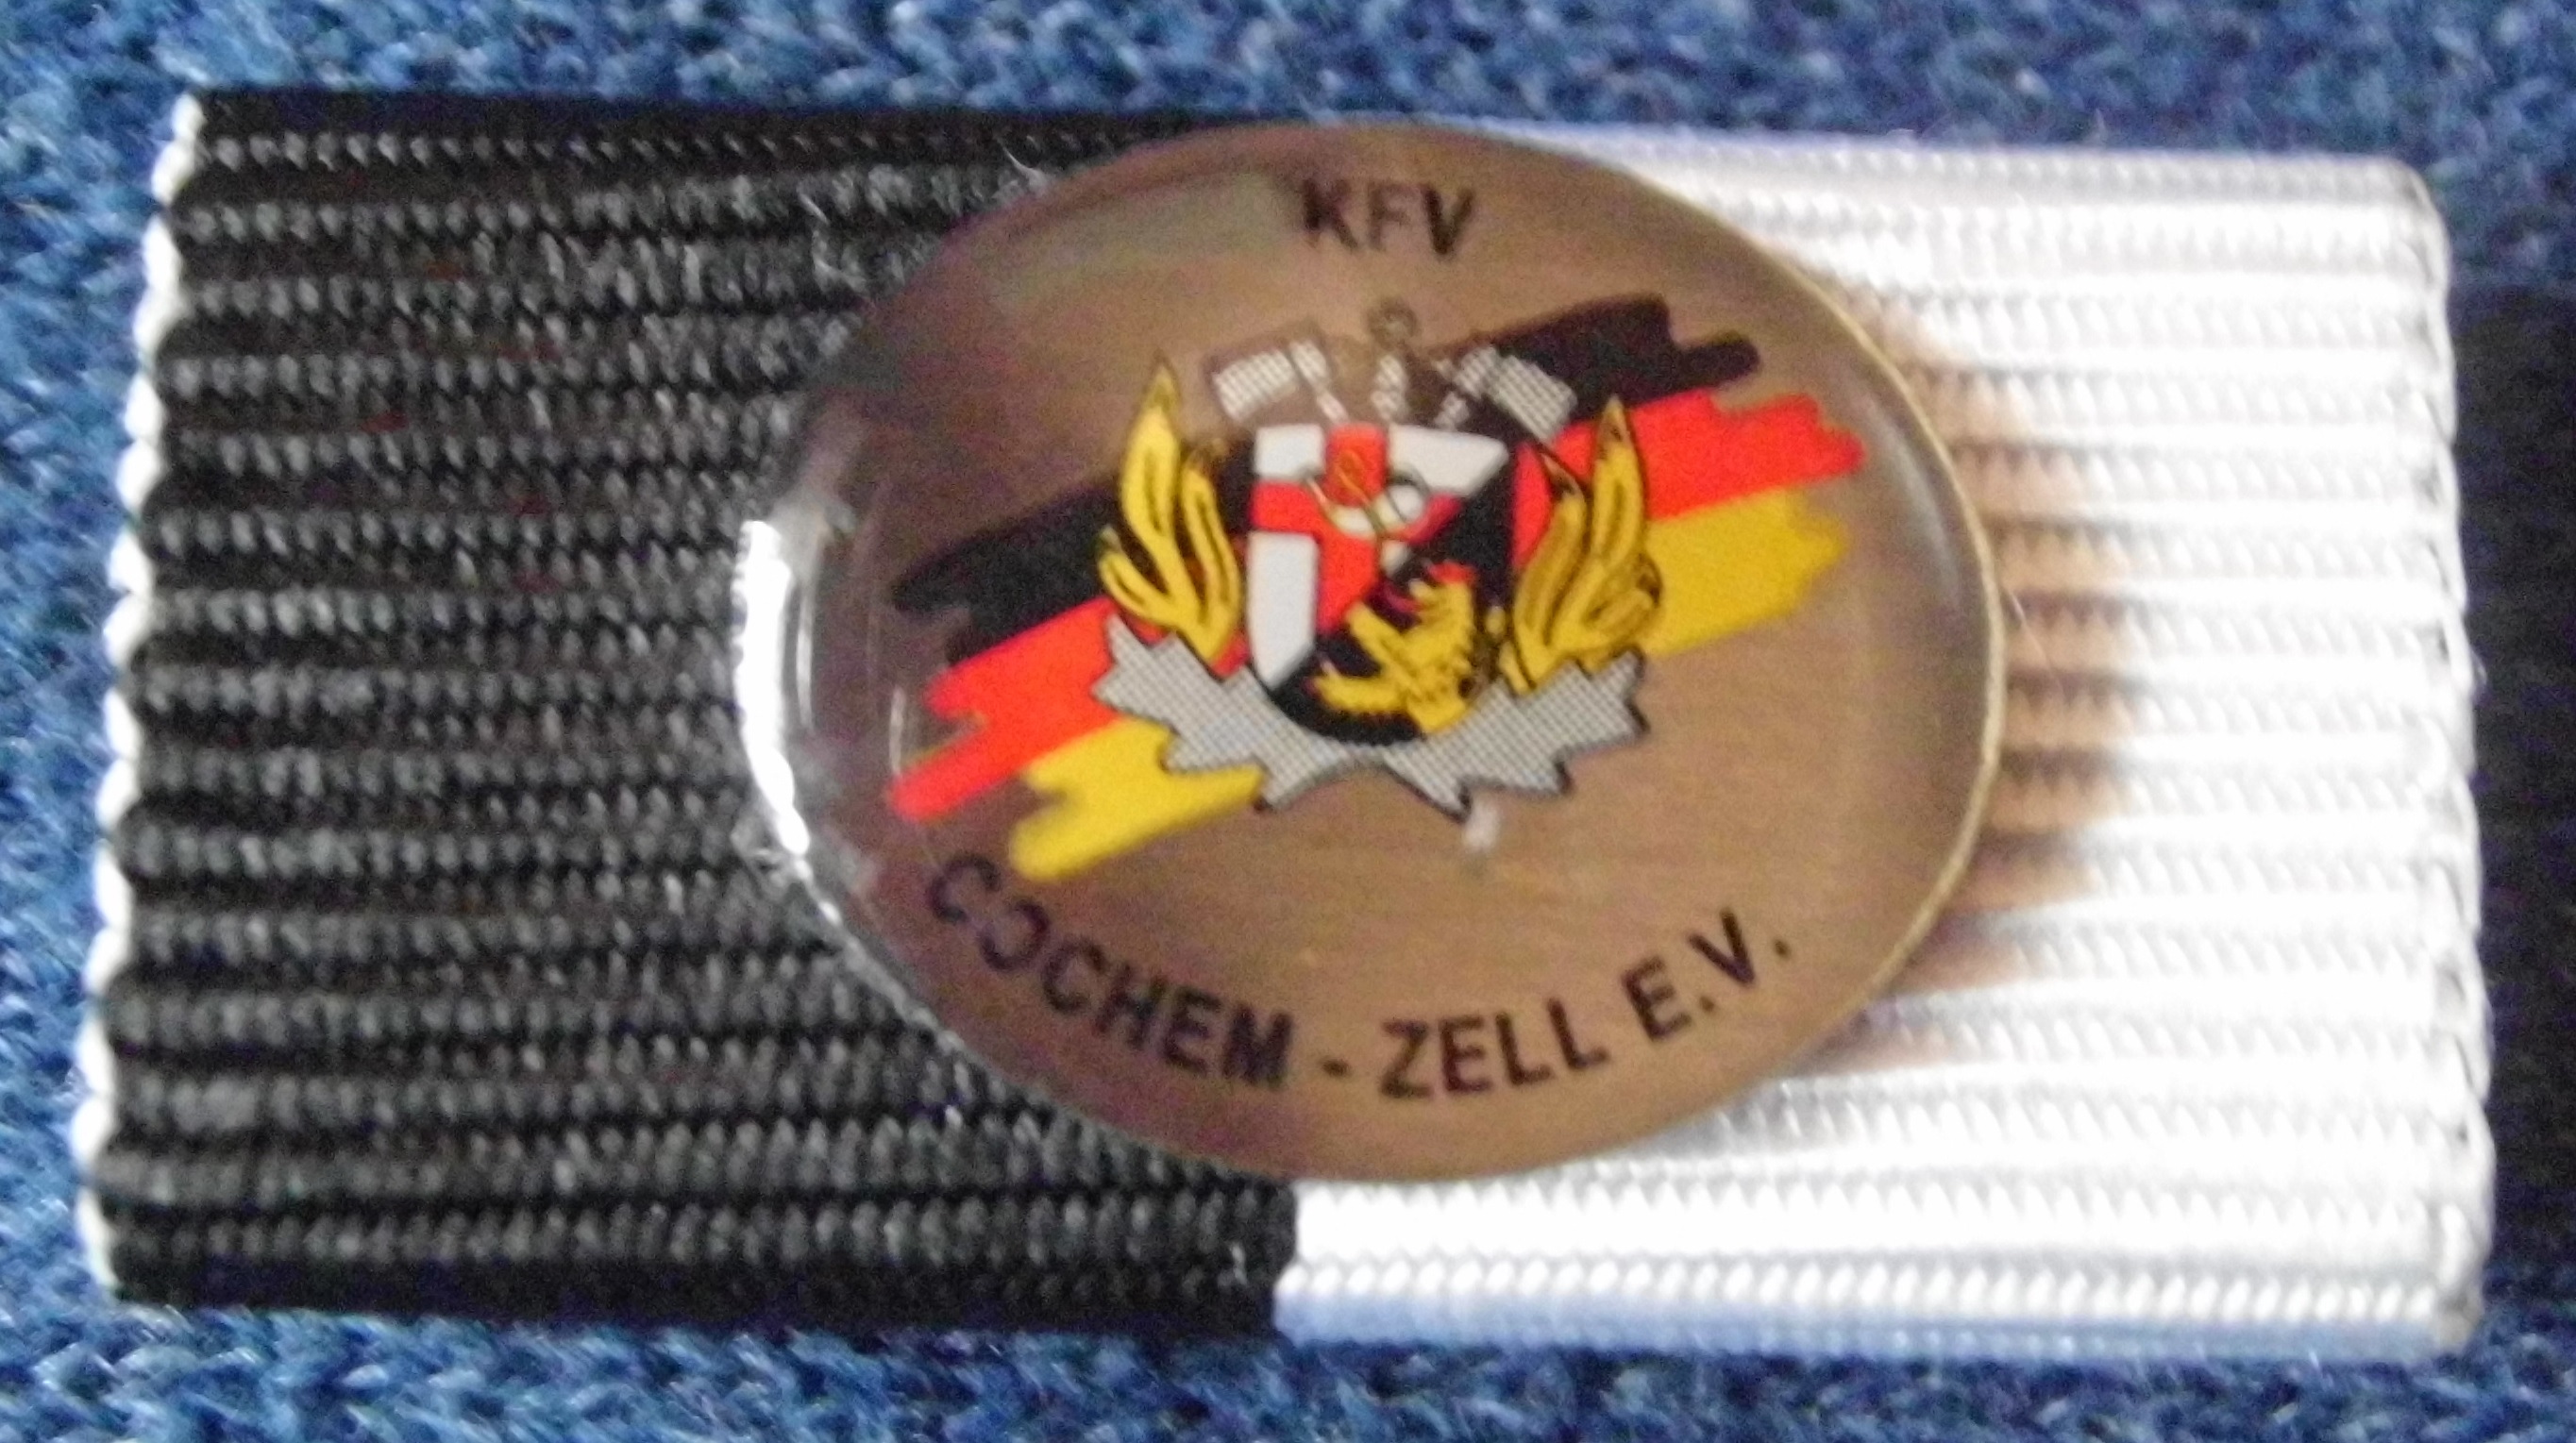 Ehrenzeichen KFV-Cochem-Zell